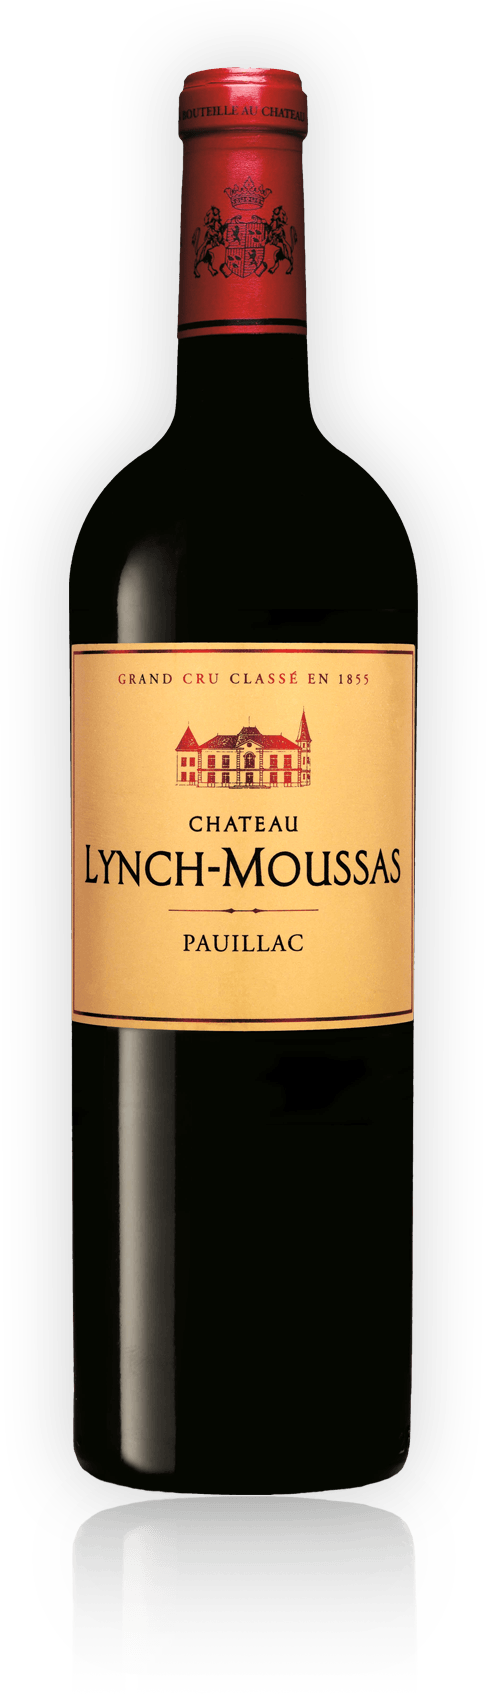 Château Lynch-Moussas- Pauillac 2016